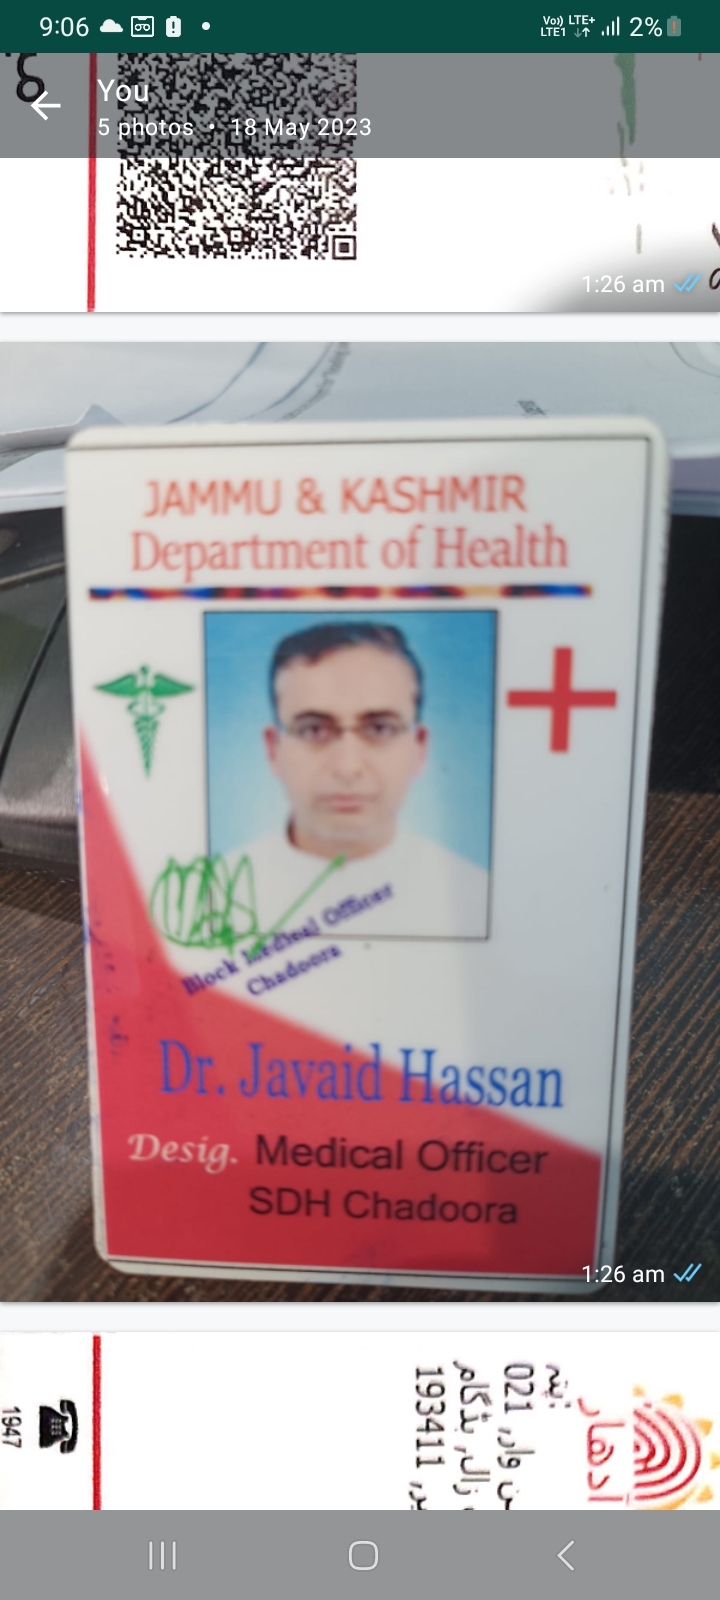 Dr. Javaid